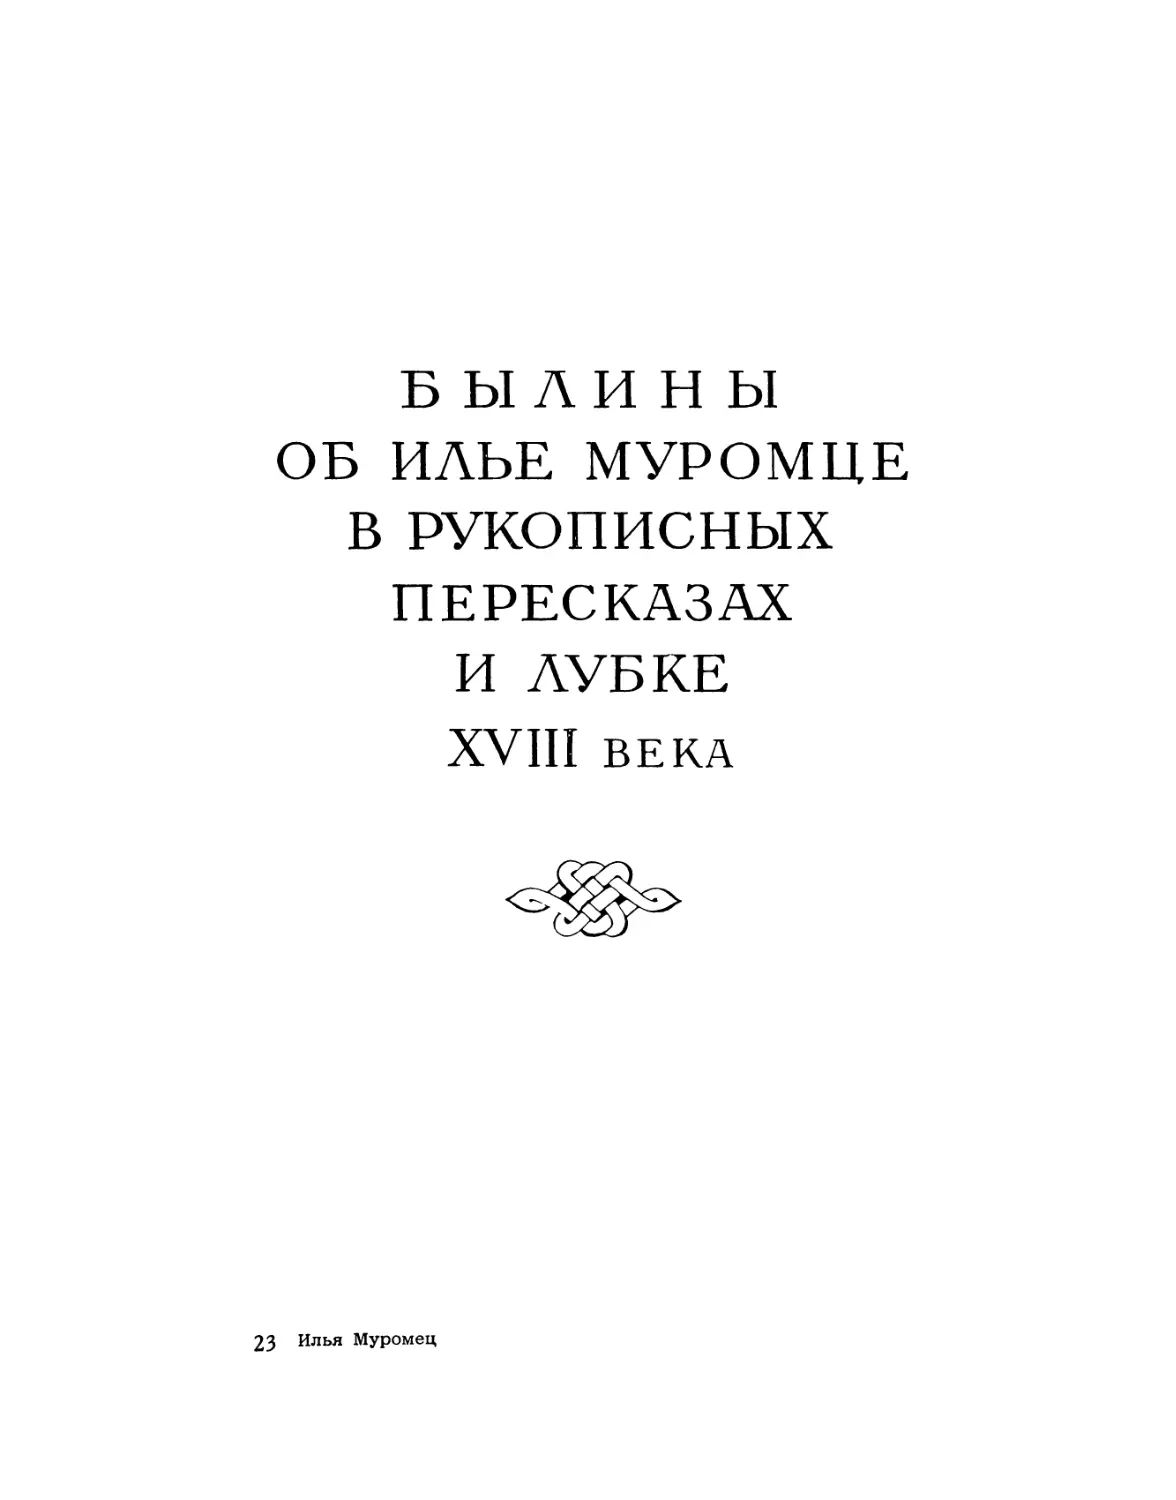 Былины об Илье Муромце в рукописных пересказах и лубке XVIII века